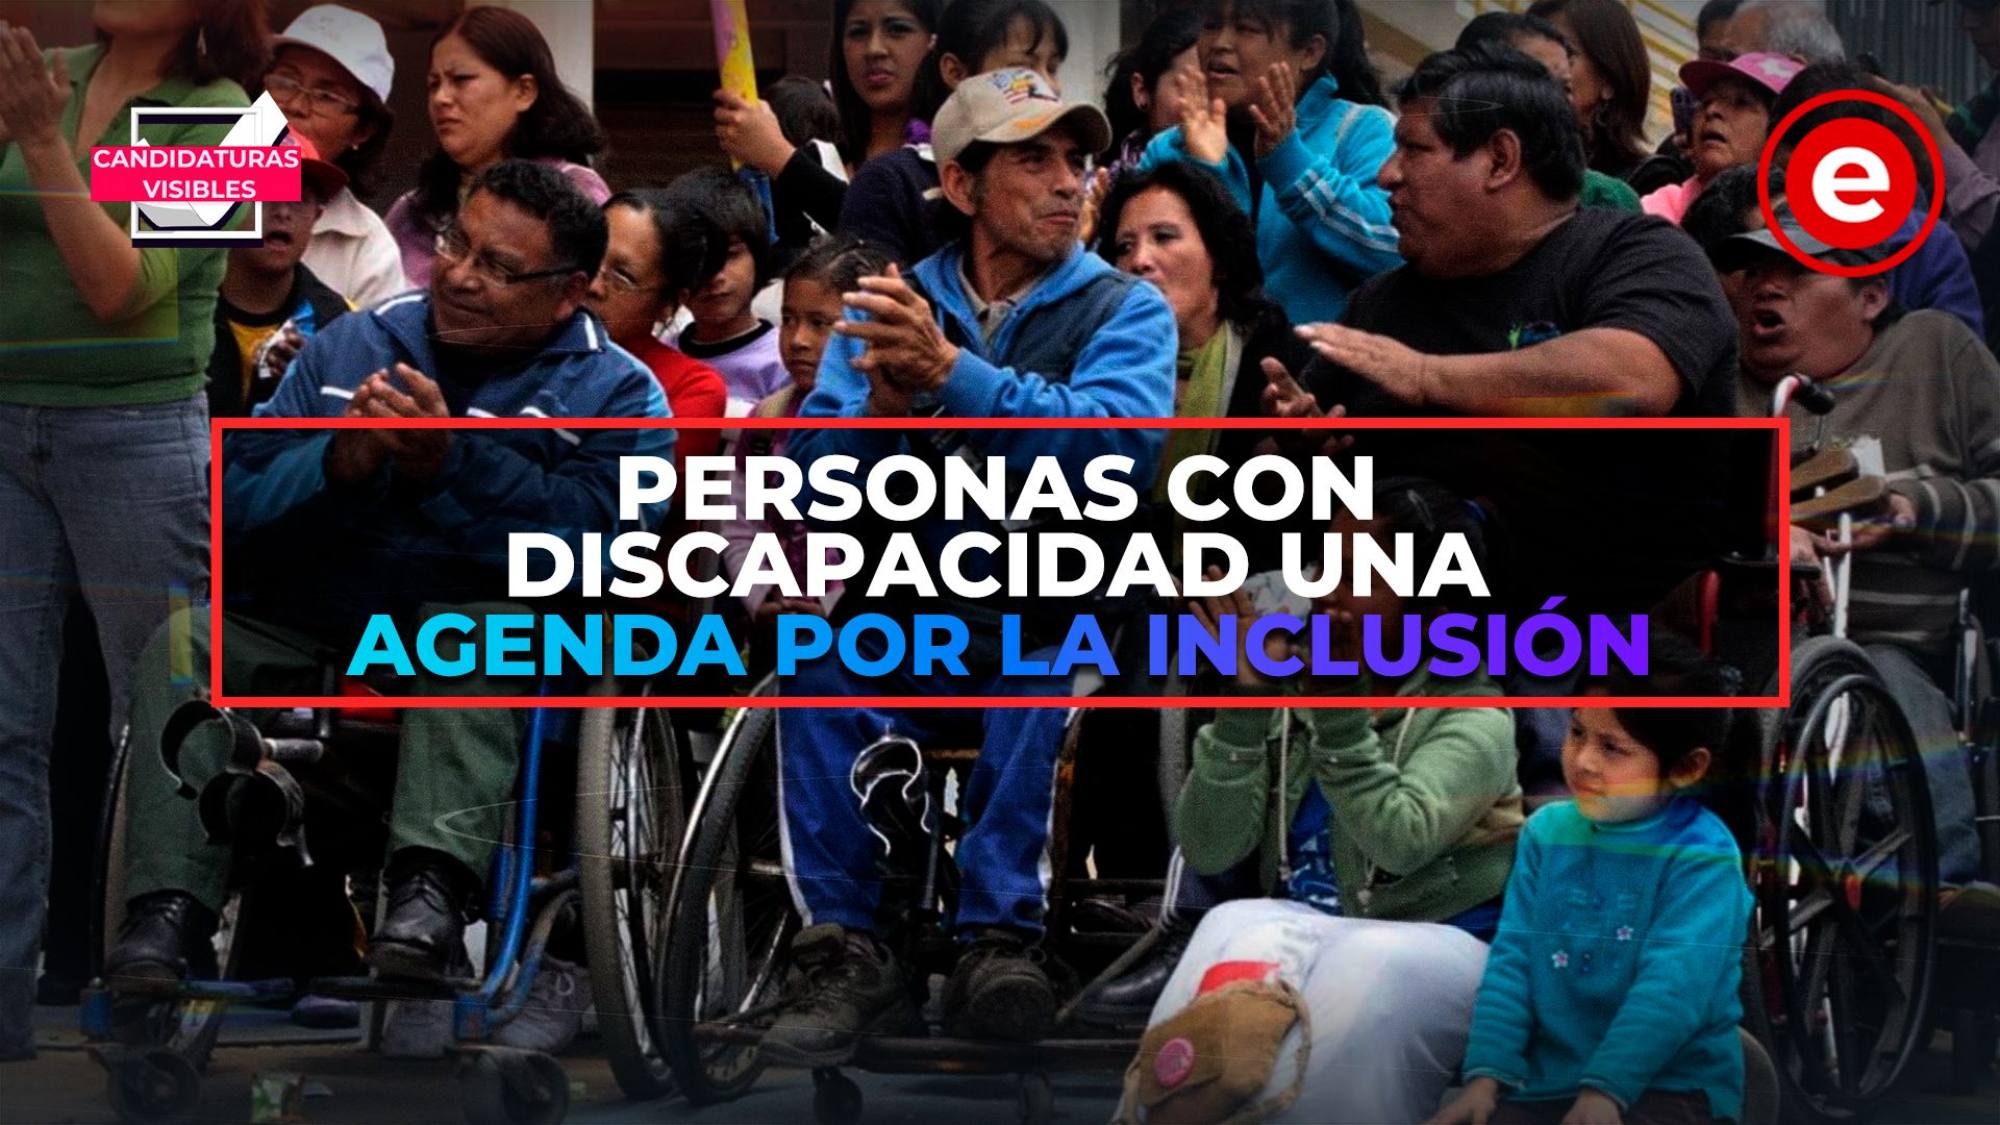 Candidaturas Visibles | Personas con discapacidad una agenda por la inclusión, Epicentro TV